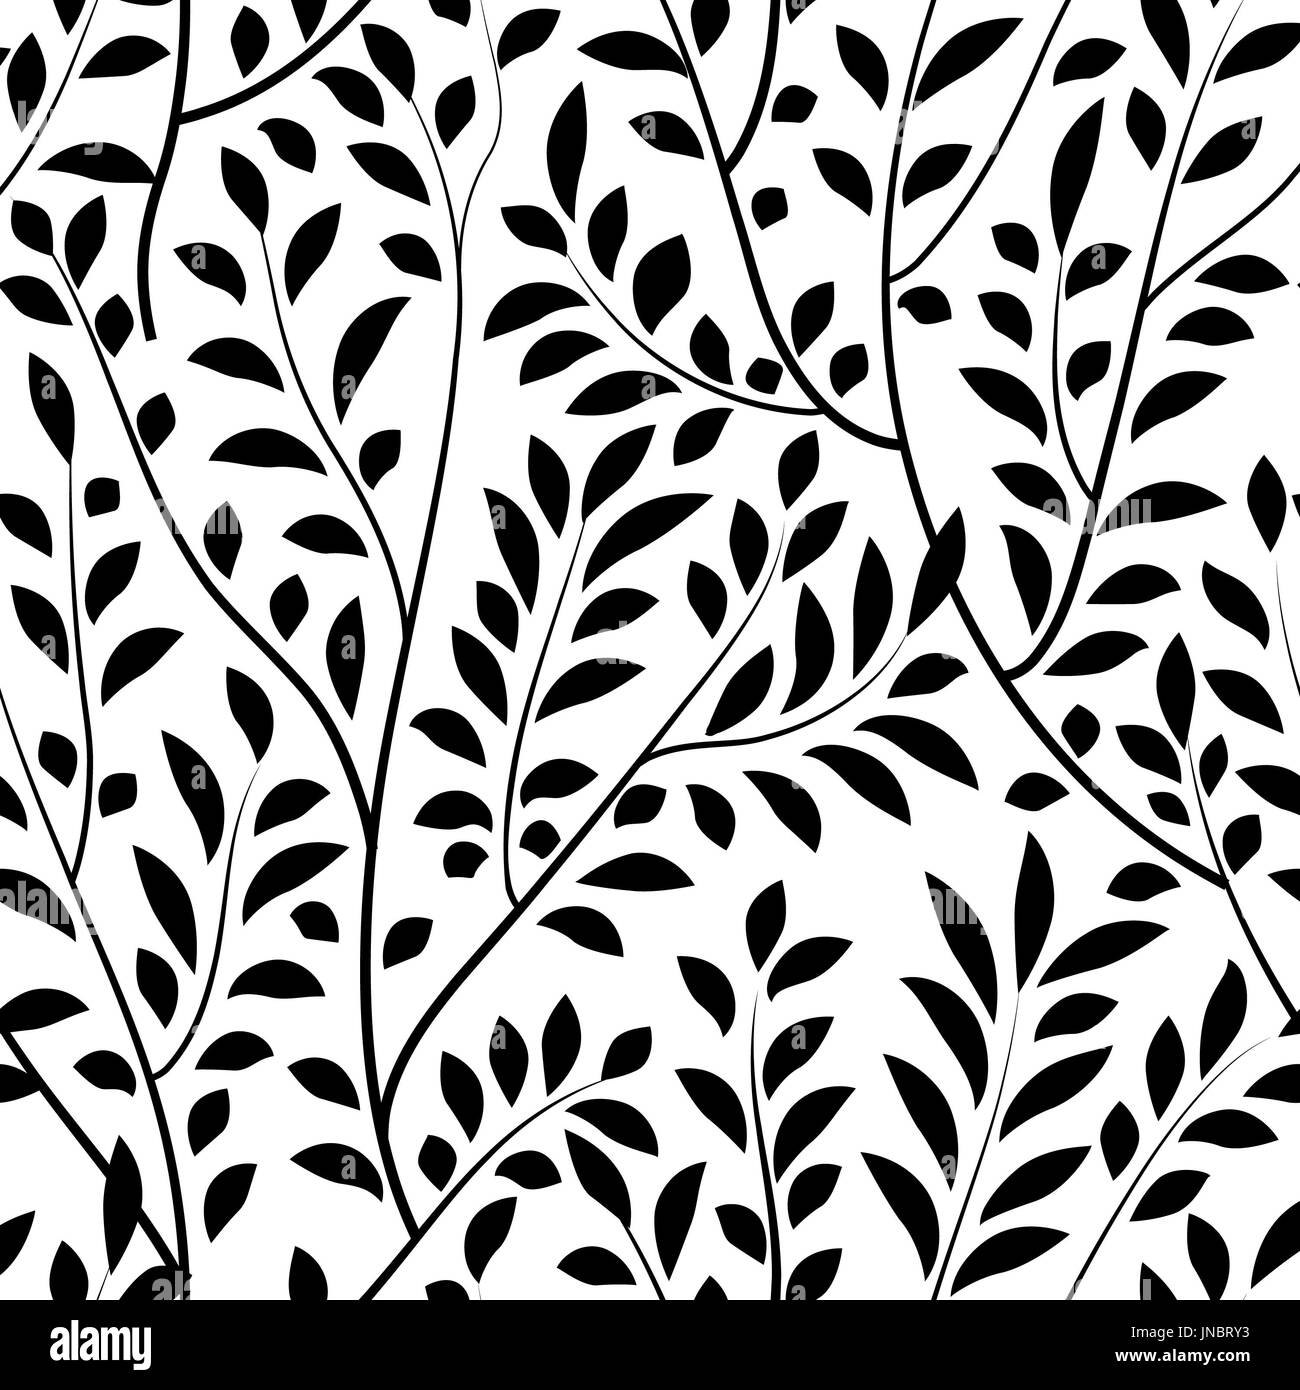 Motif floral seamless. Direction générale avec des feuilles jardin carrelée. vector illustration nature background Banque D'Images